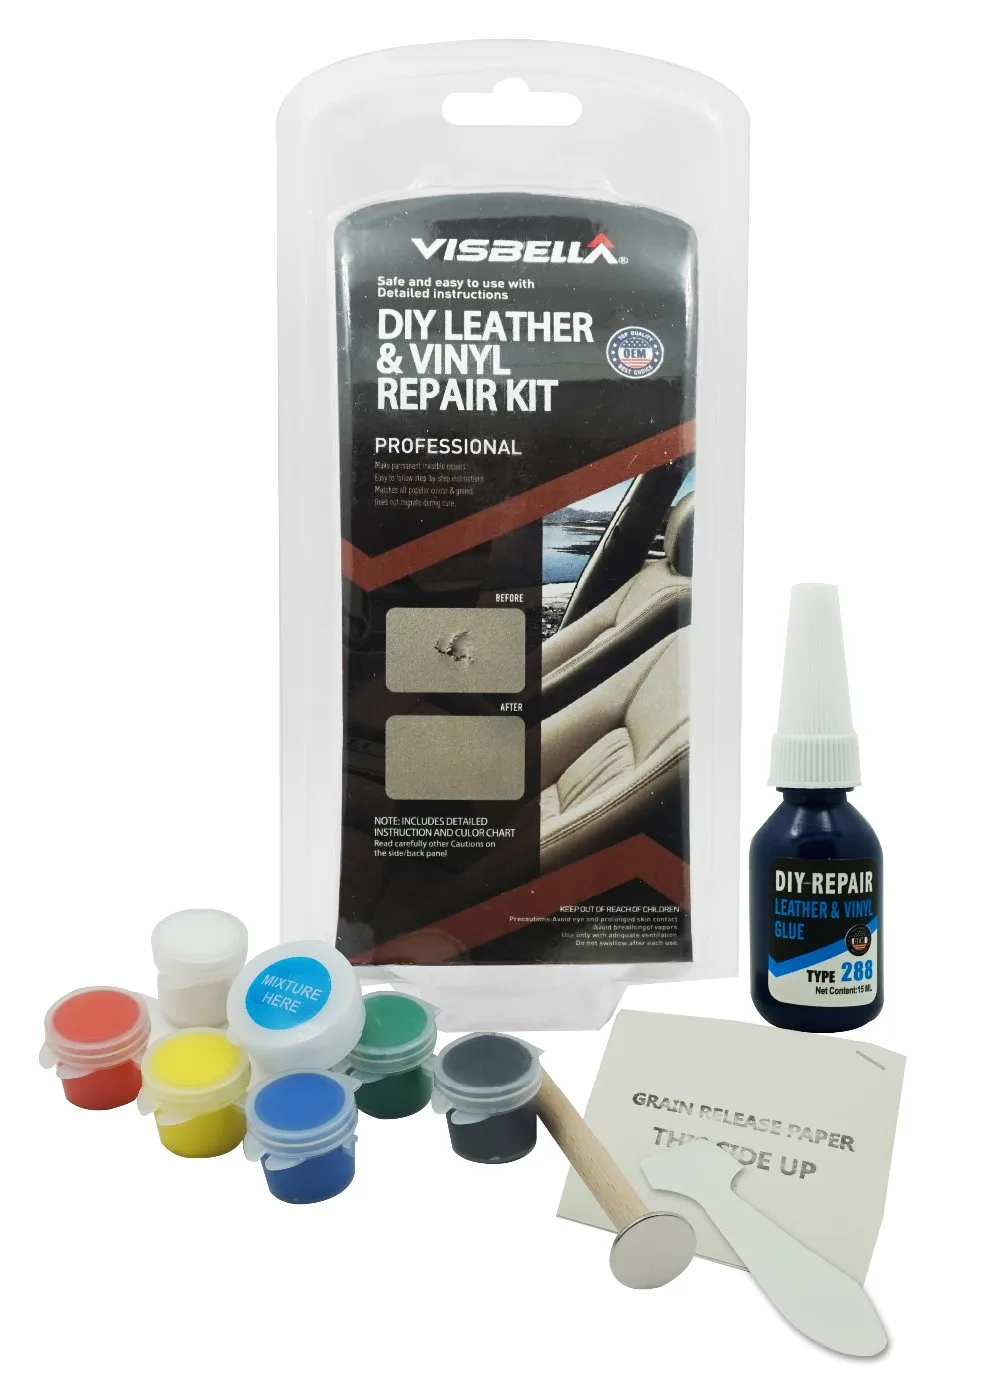 Visbella DIY leather vinyl repair kit leather repair adhesive